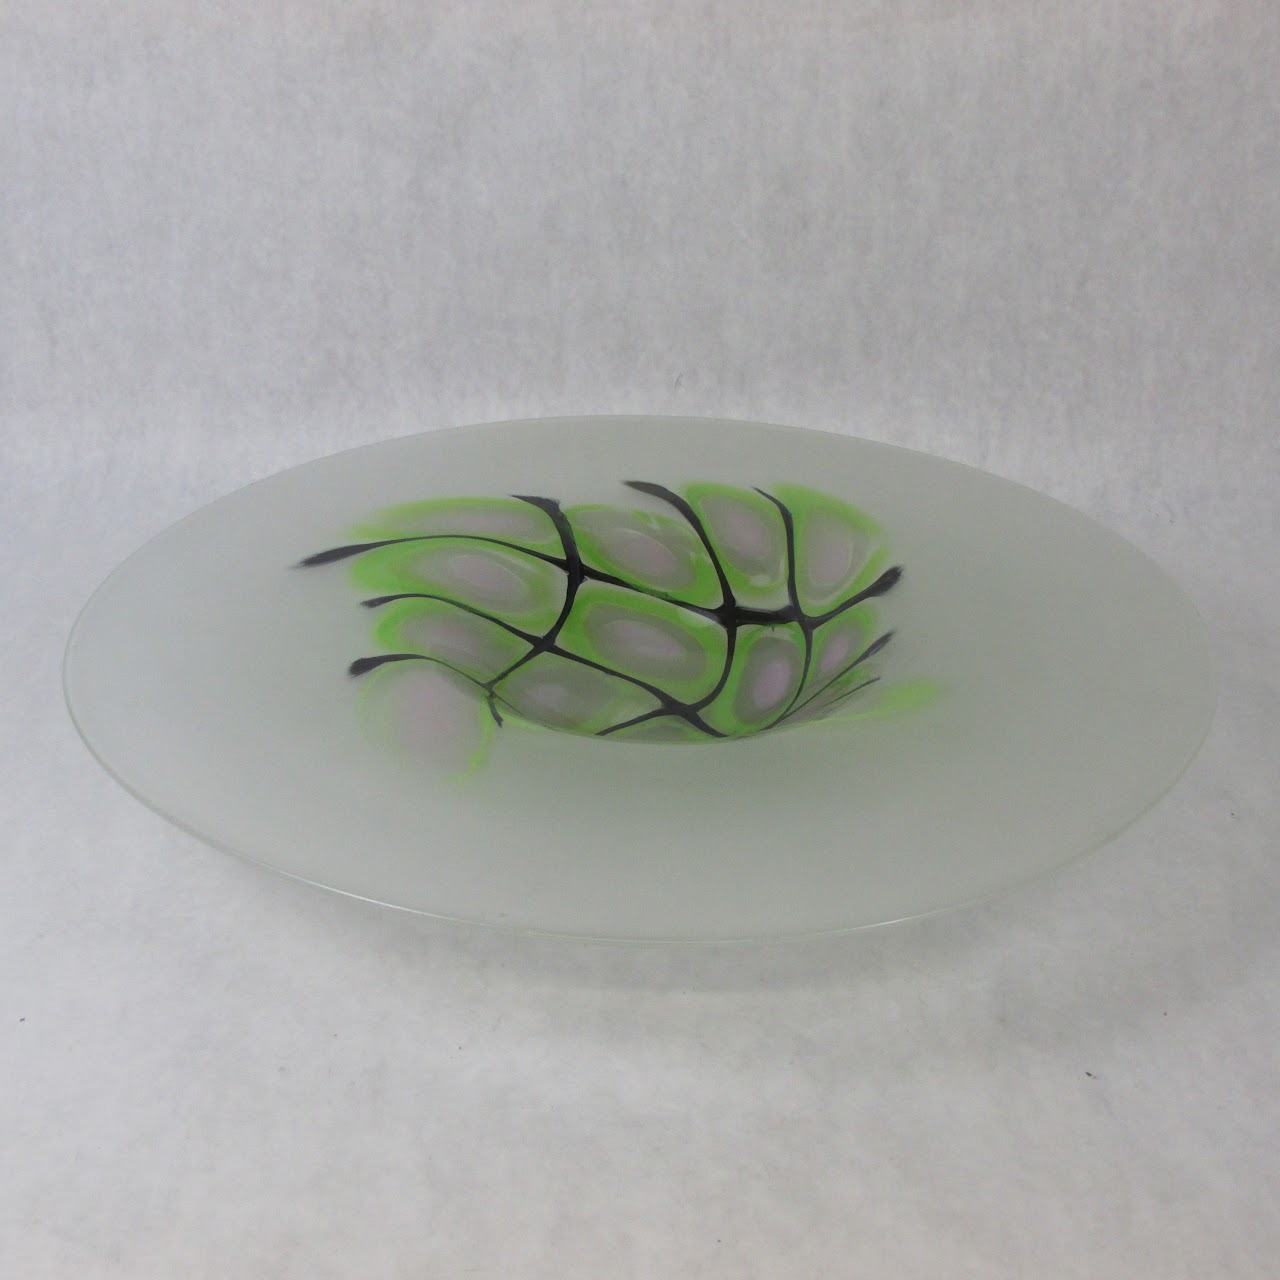 Art Glass Centerpiece Bowl